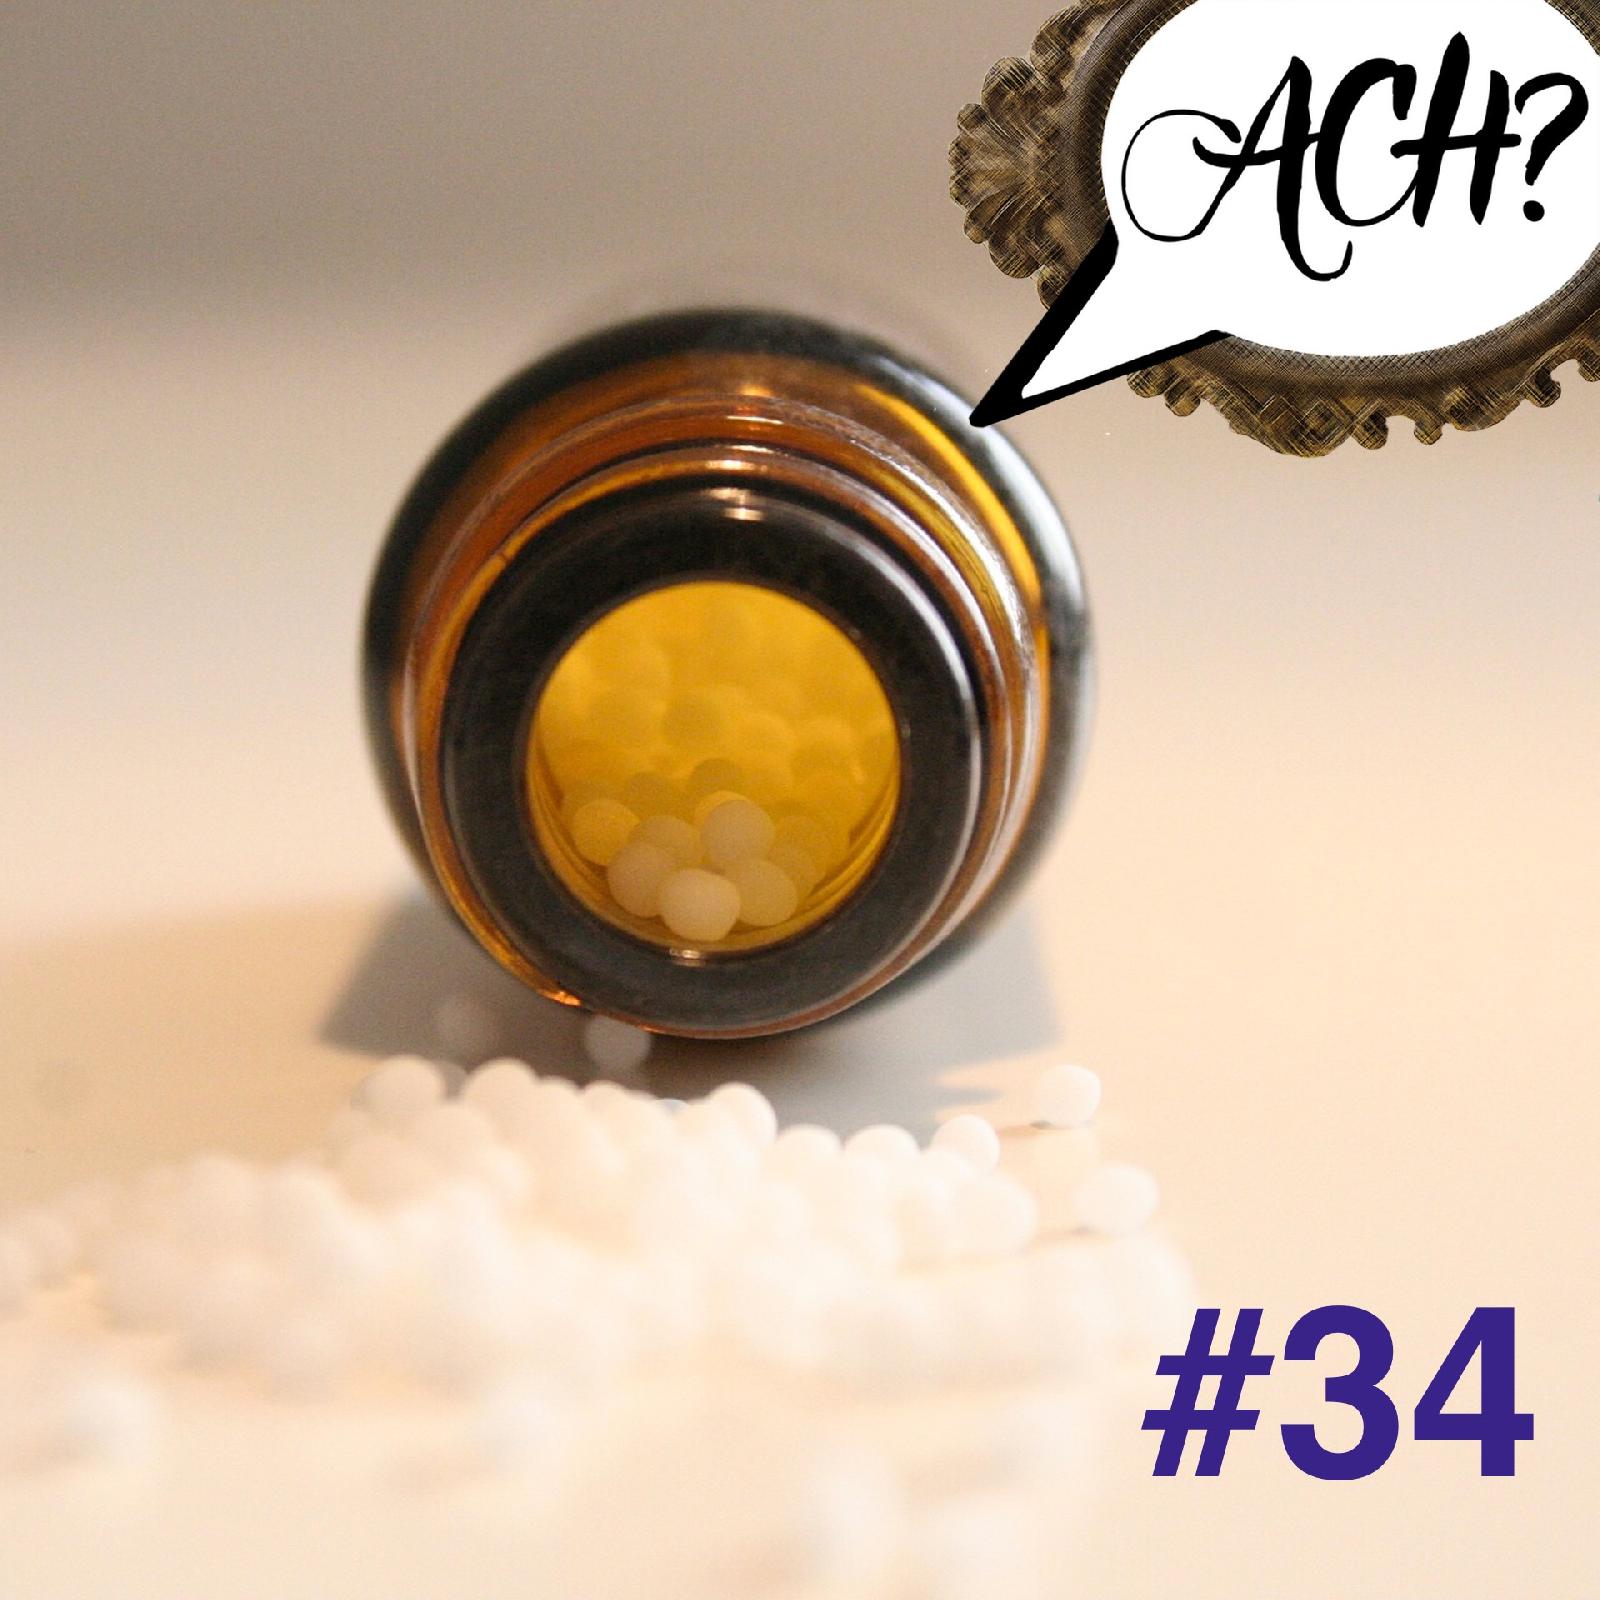 Ach-Podcast: 34 – Homöopathie und andere nichtmedizinische Pseudowissenschaften